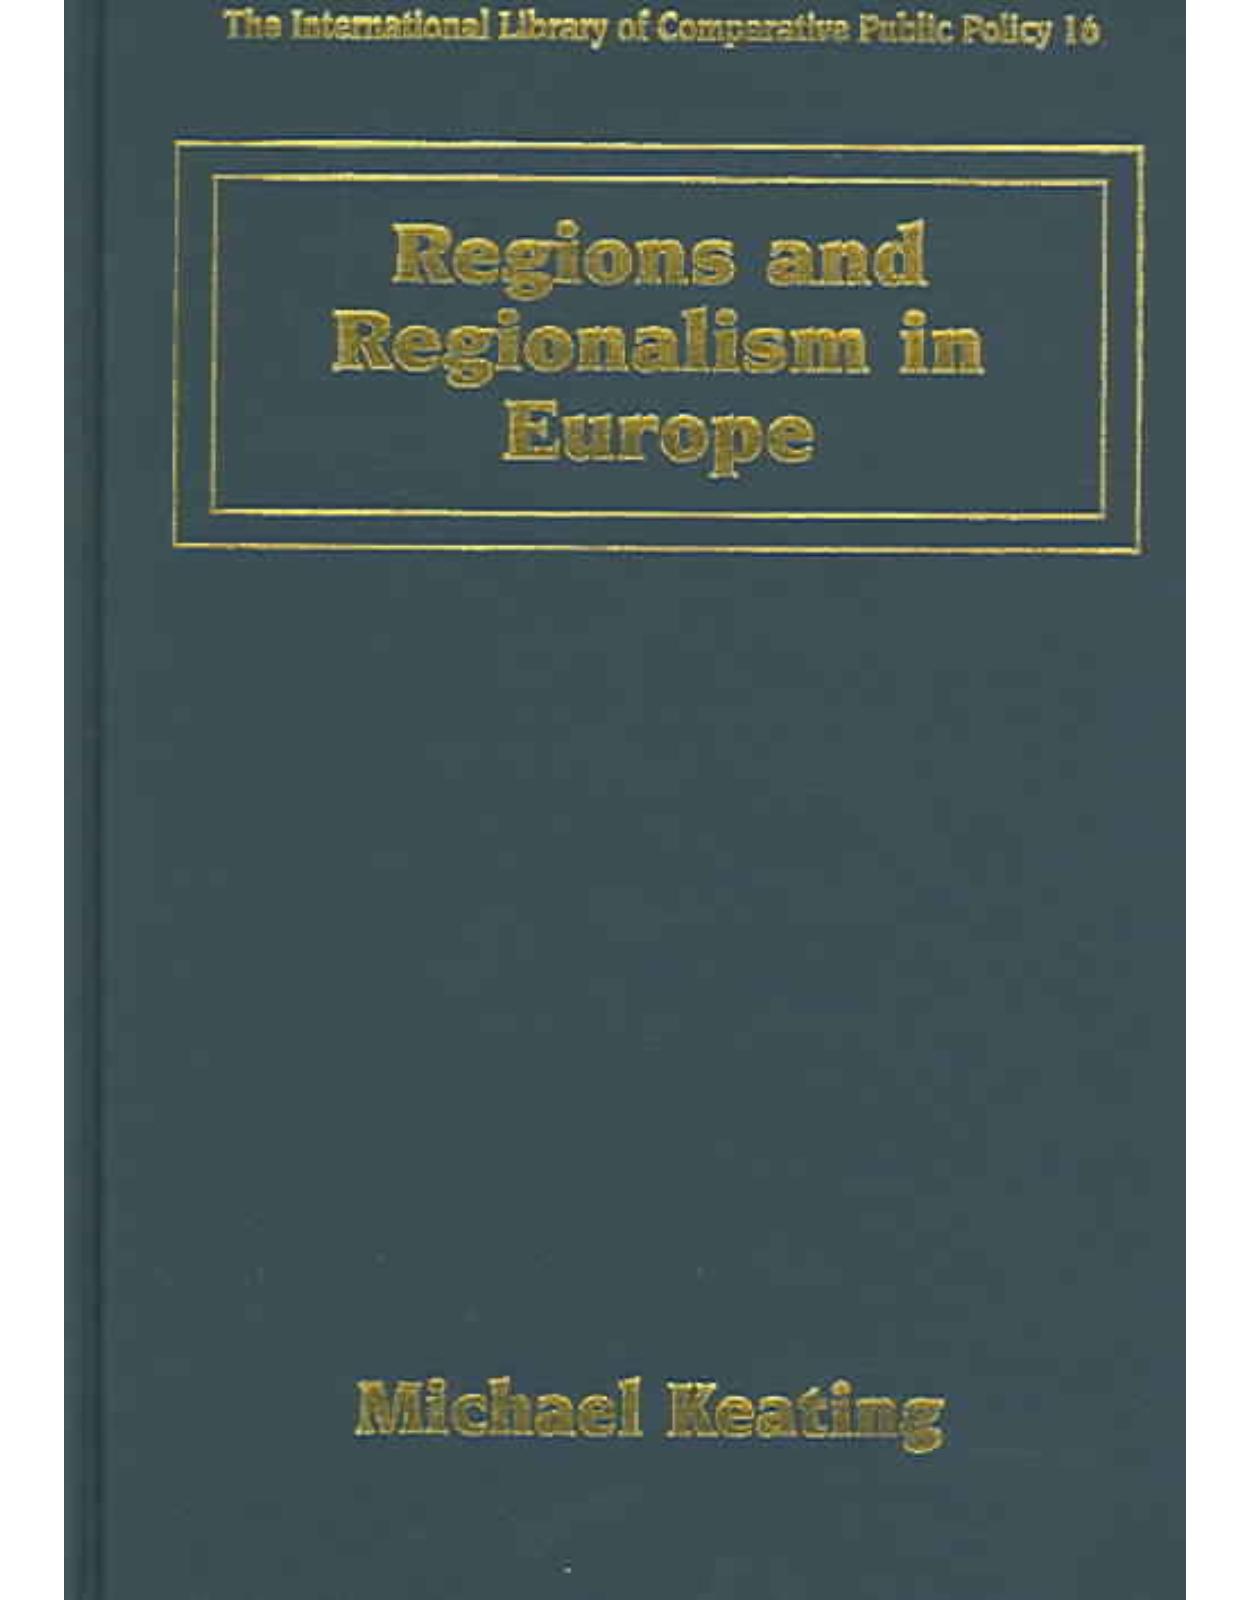 Regions and Regionalism in Europe